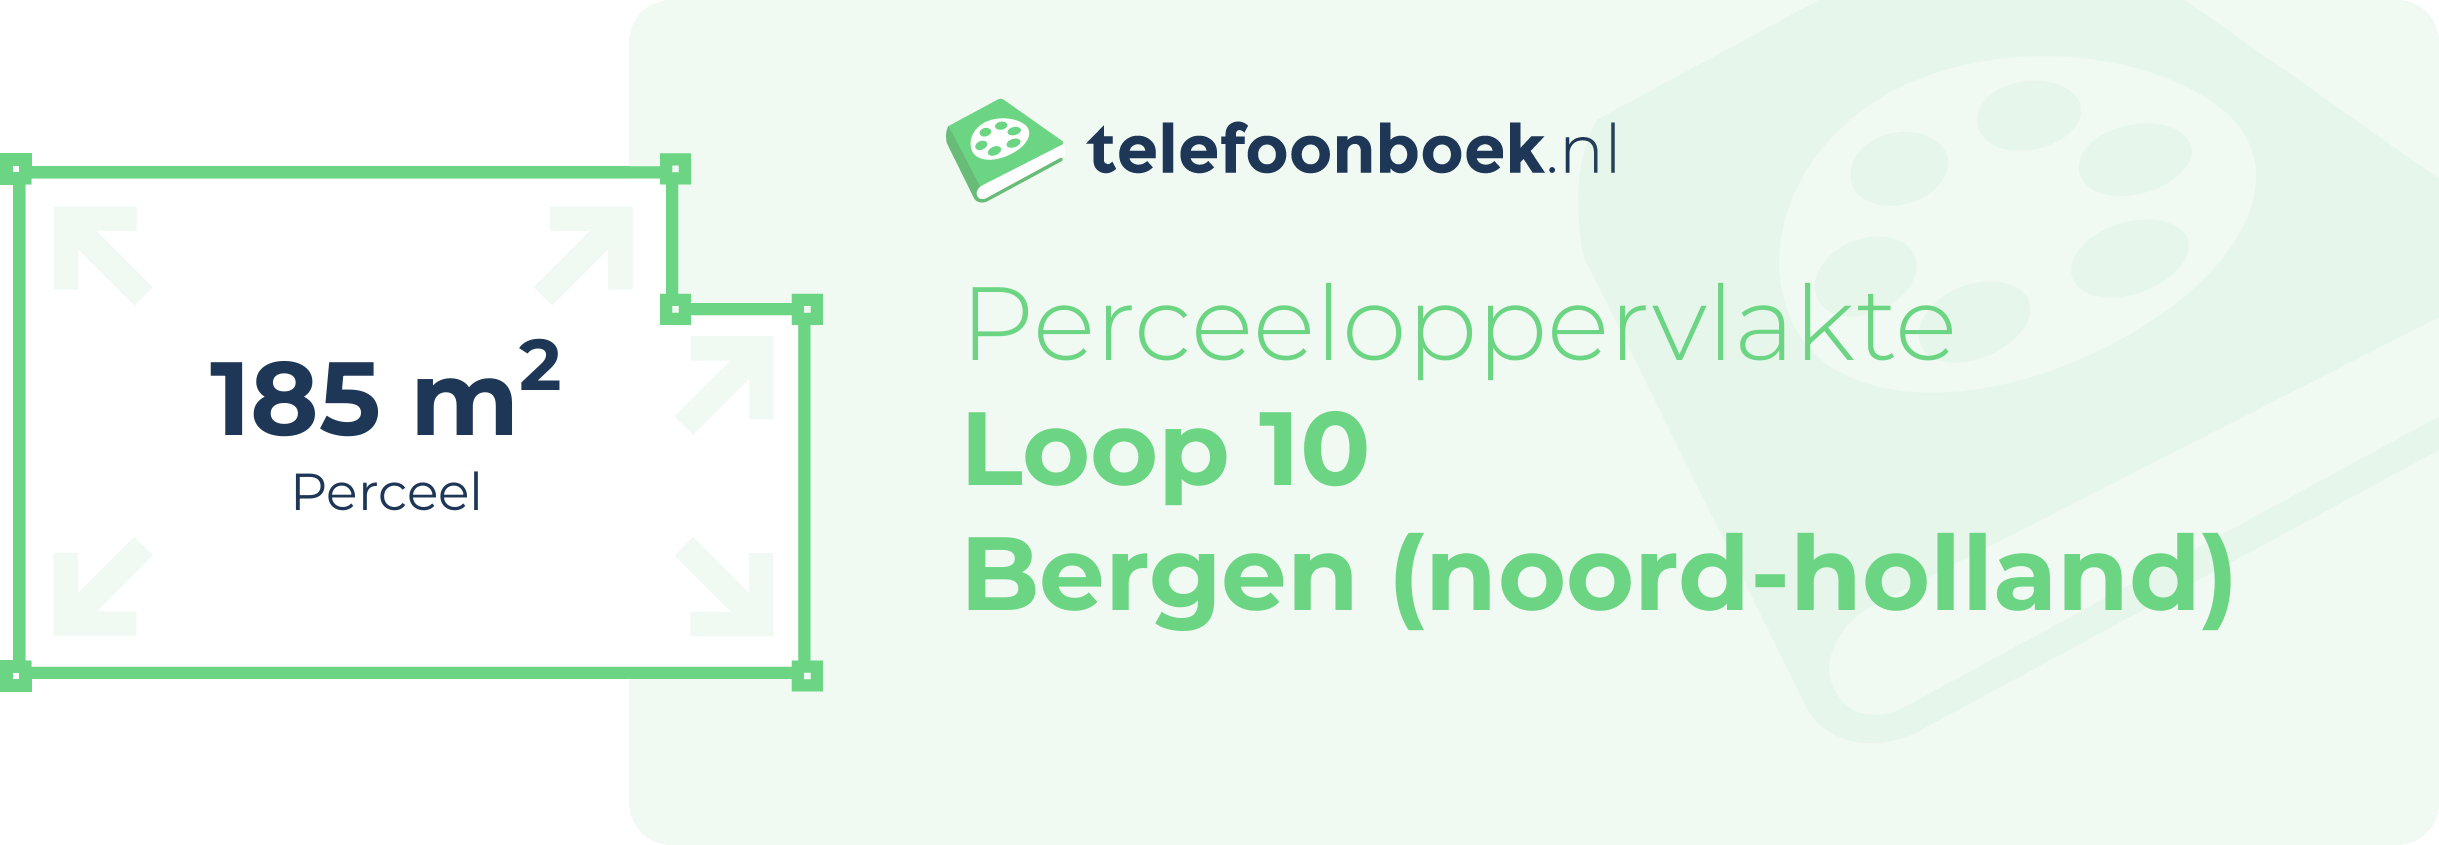 Perceeloppervlakte Loop 10 Bergen (Noord-Holland)